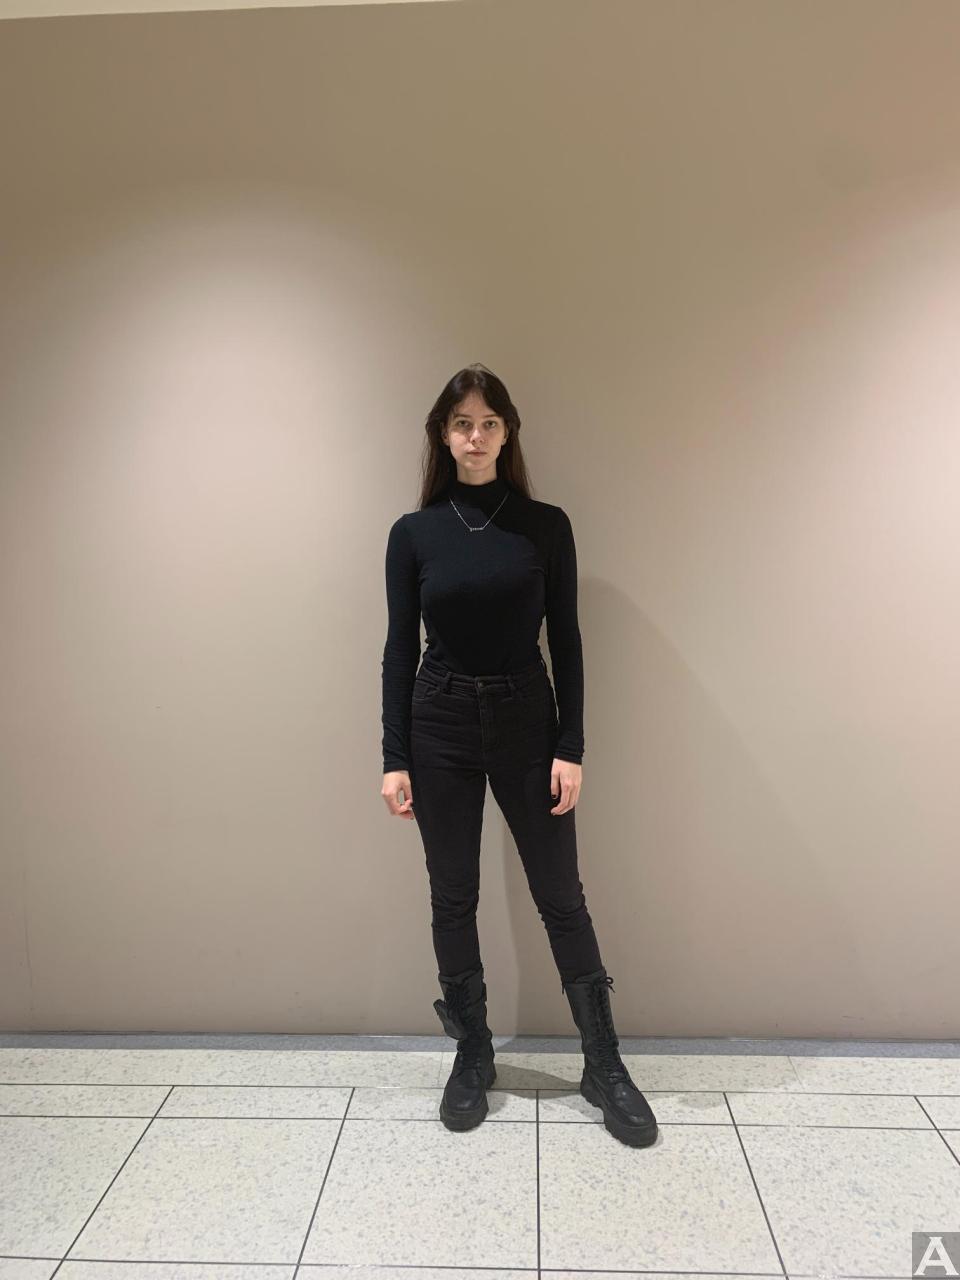 東京外国人モデル事務所アクアモデル所属の白人モデルのアネタ